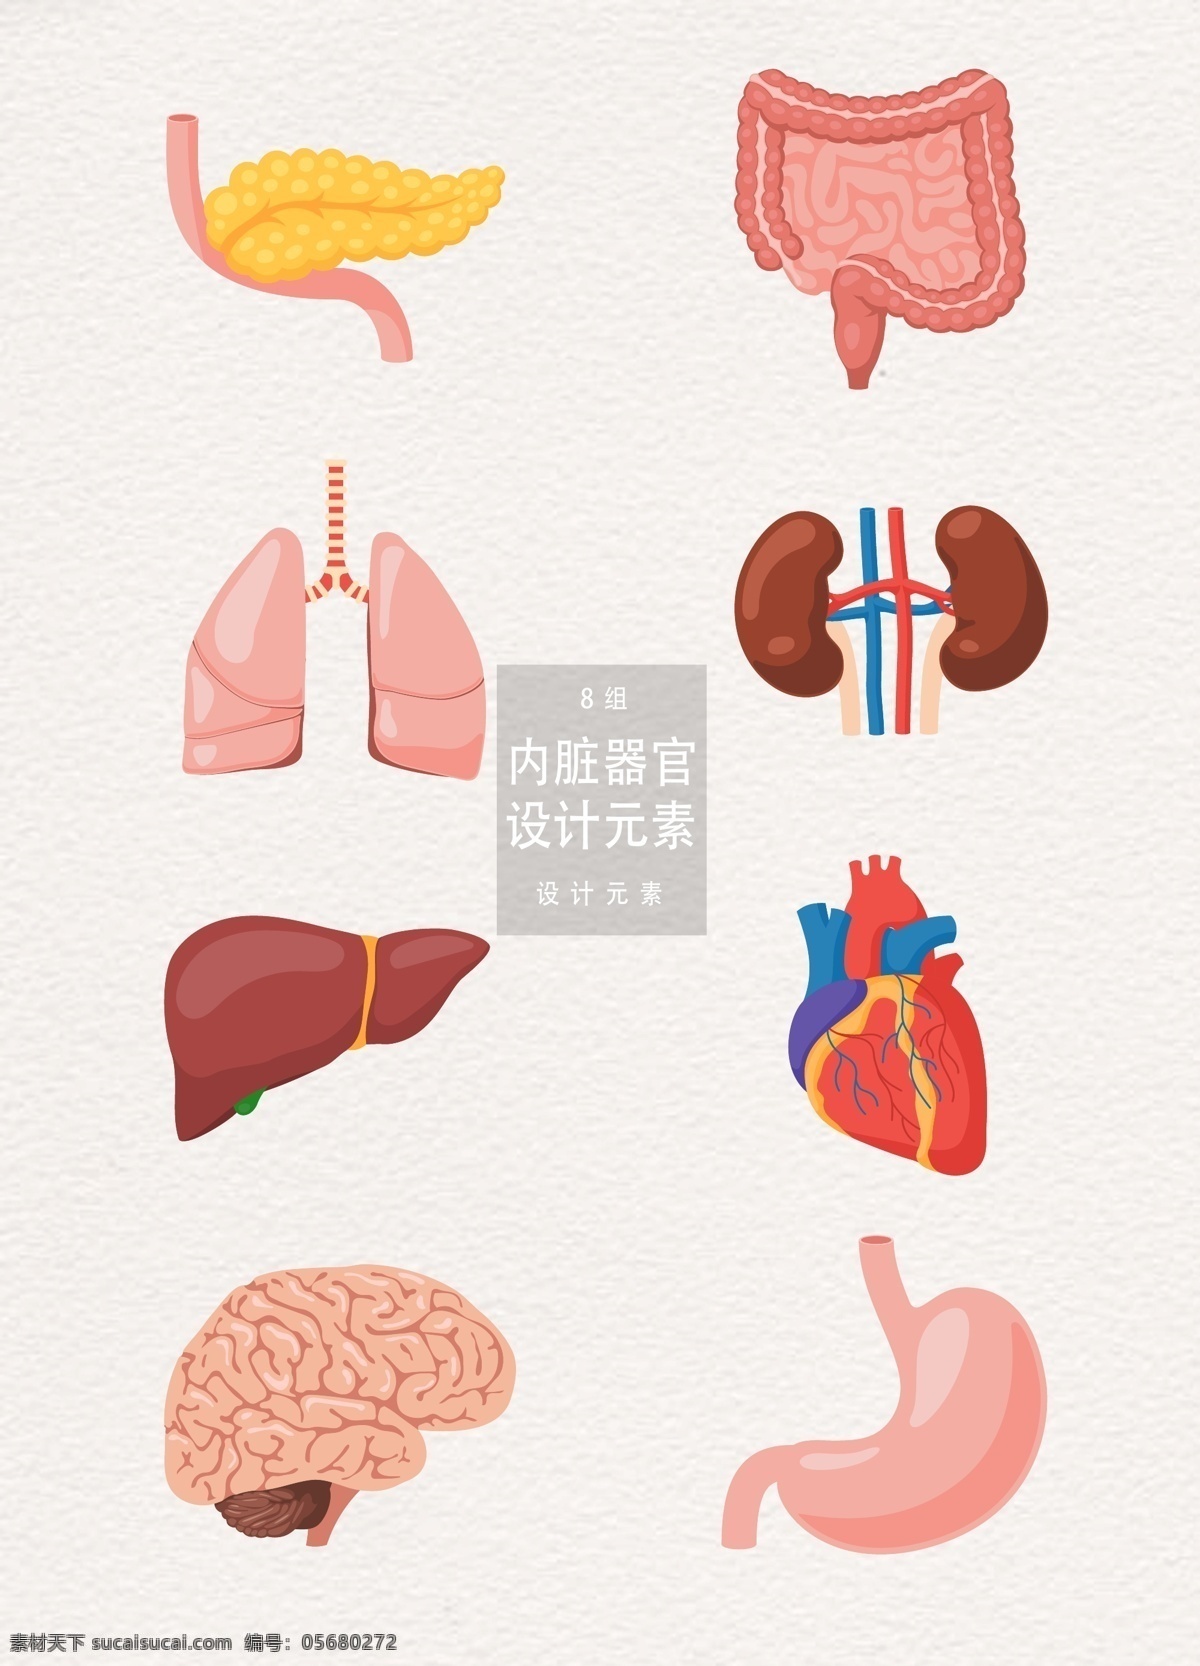 人类 内脏 器官 元素 医疗 心 心脏 胃 大脑 内脏器官 人类内脏 身体 大肠 肺